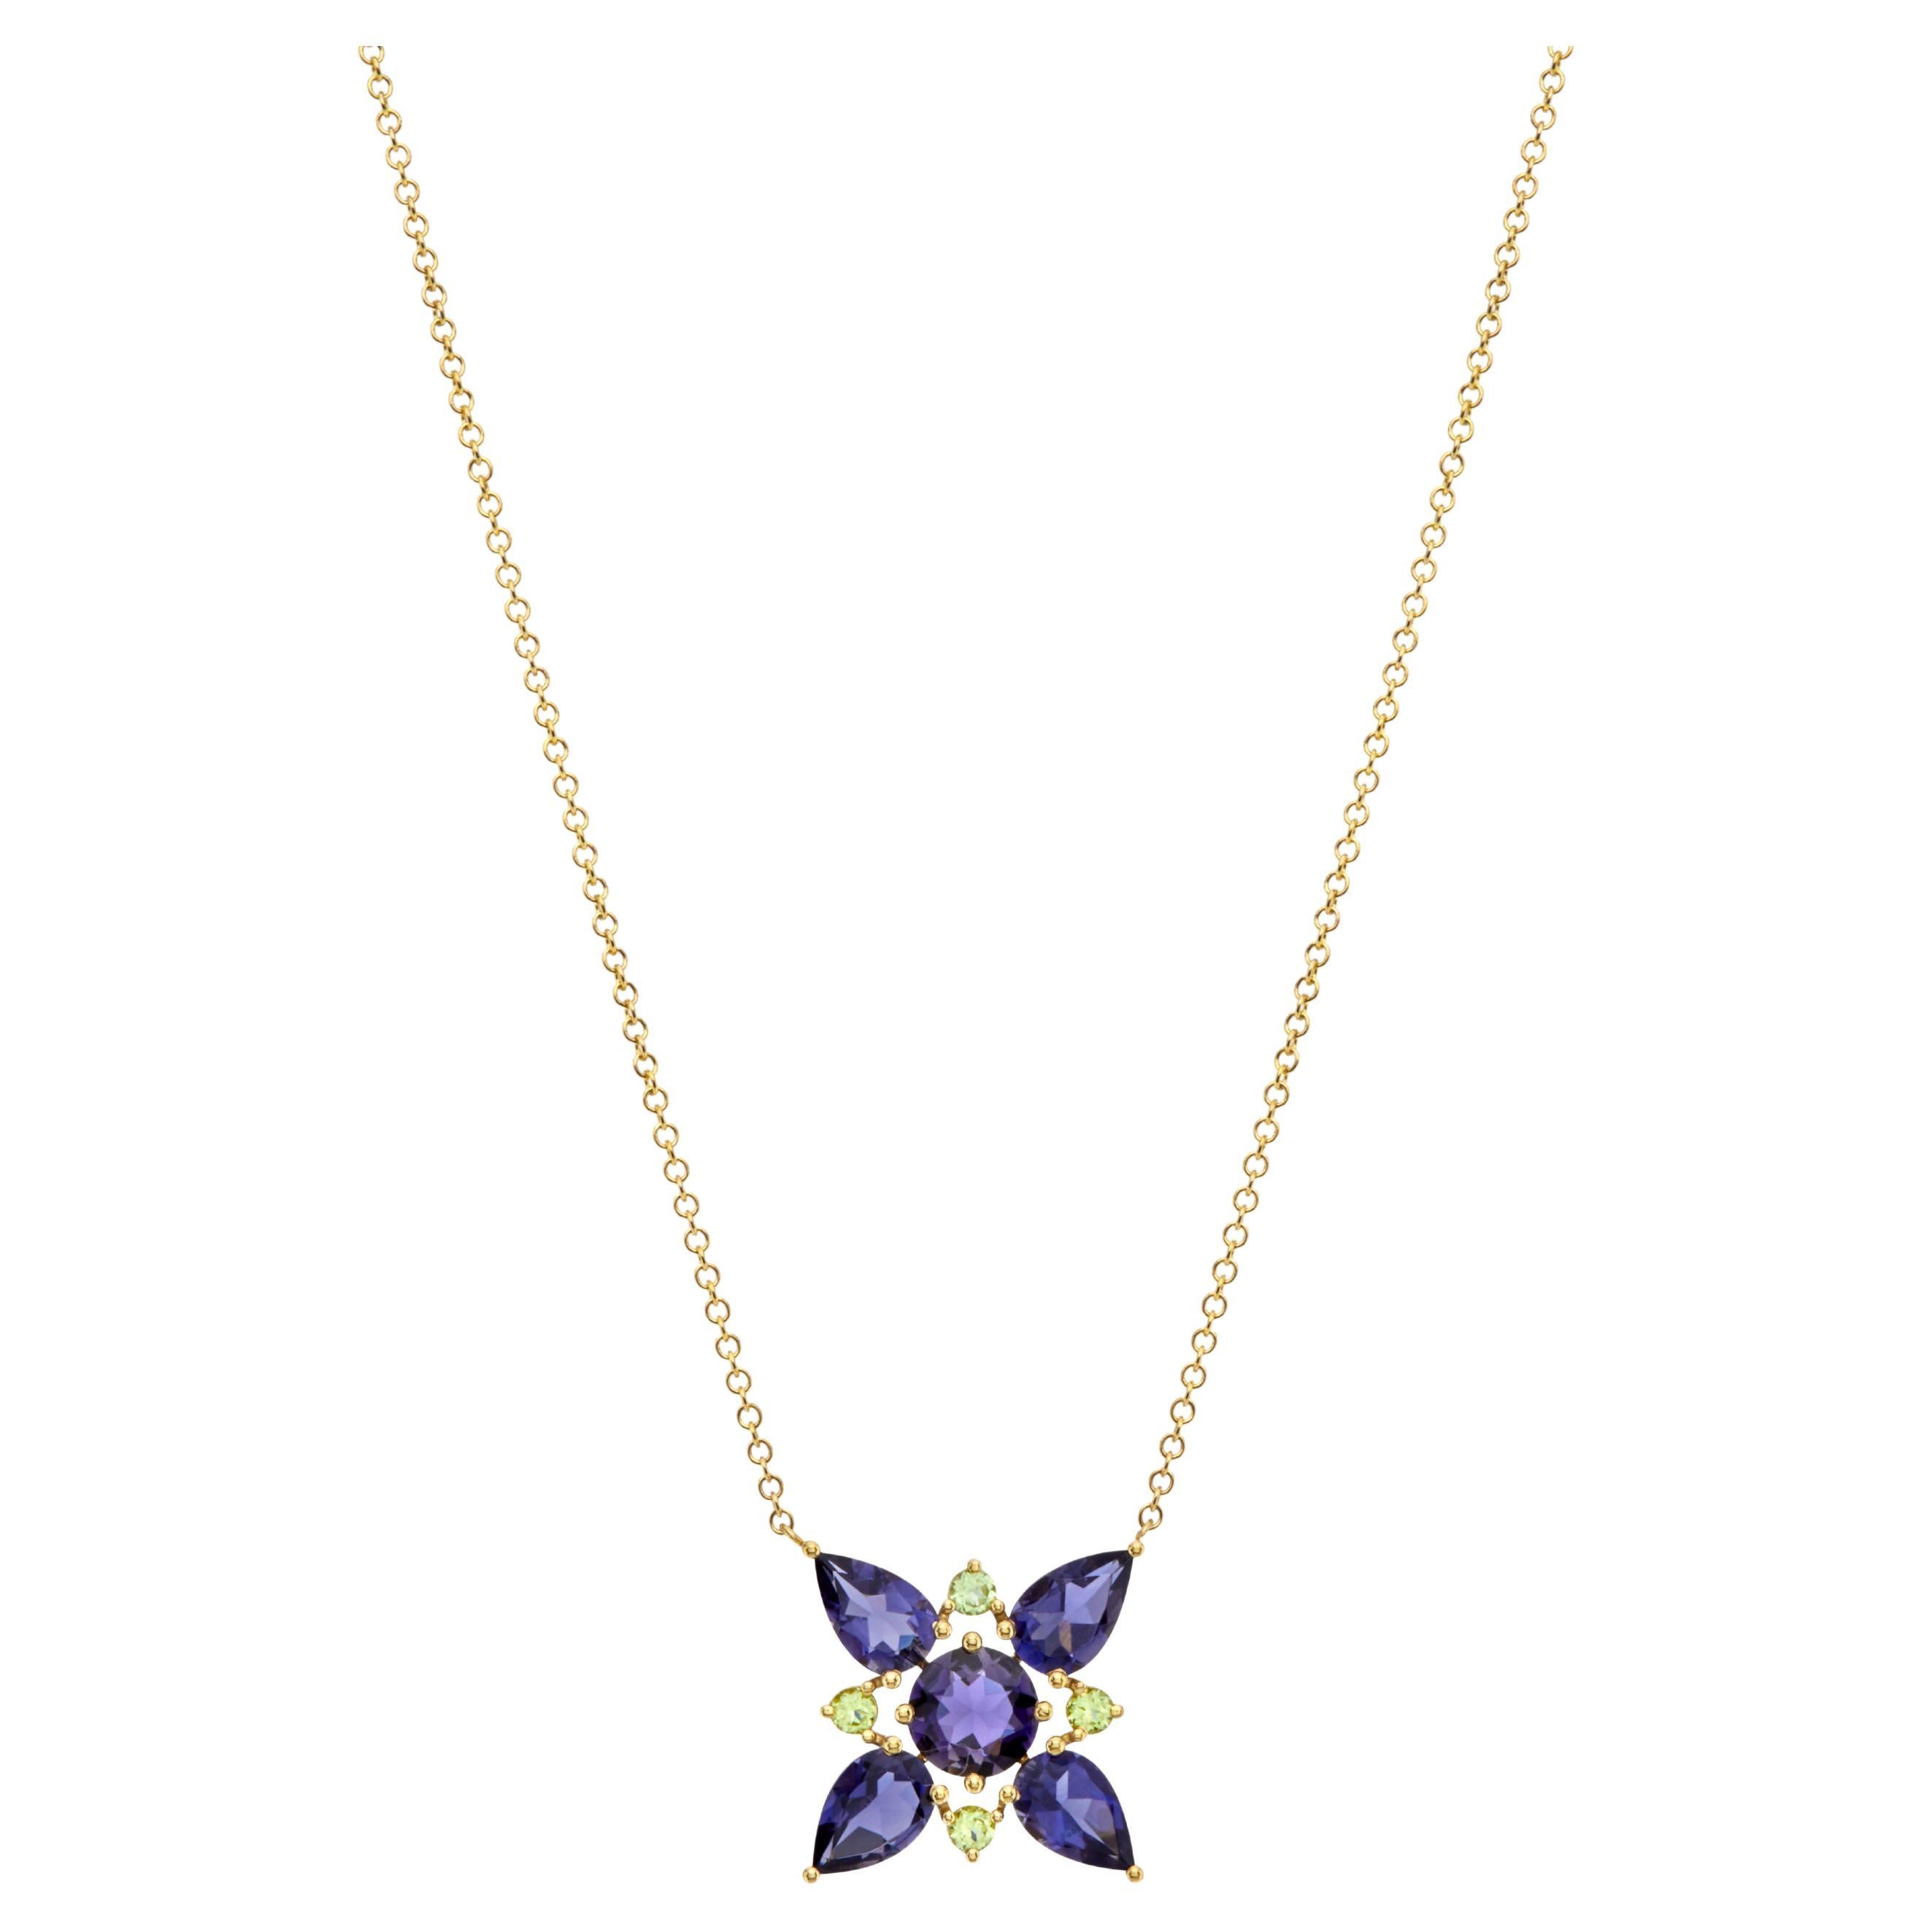 Nicofilimon the Jewelry Designer   Pendant Necklaces